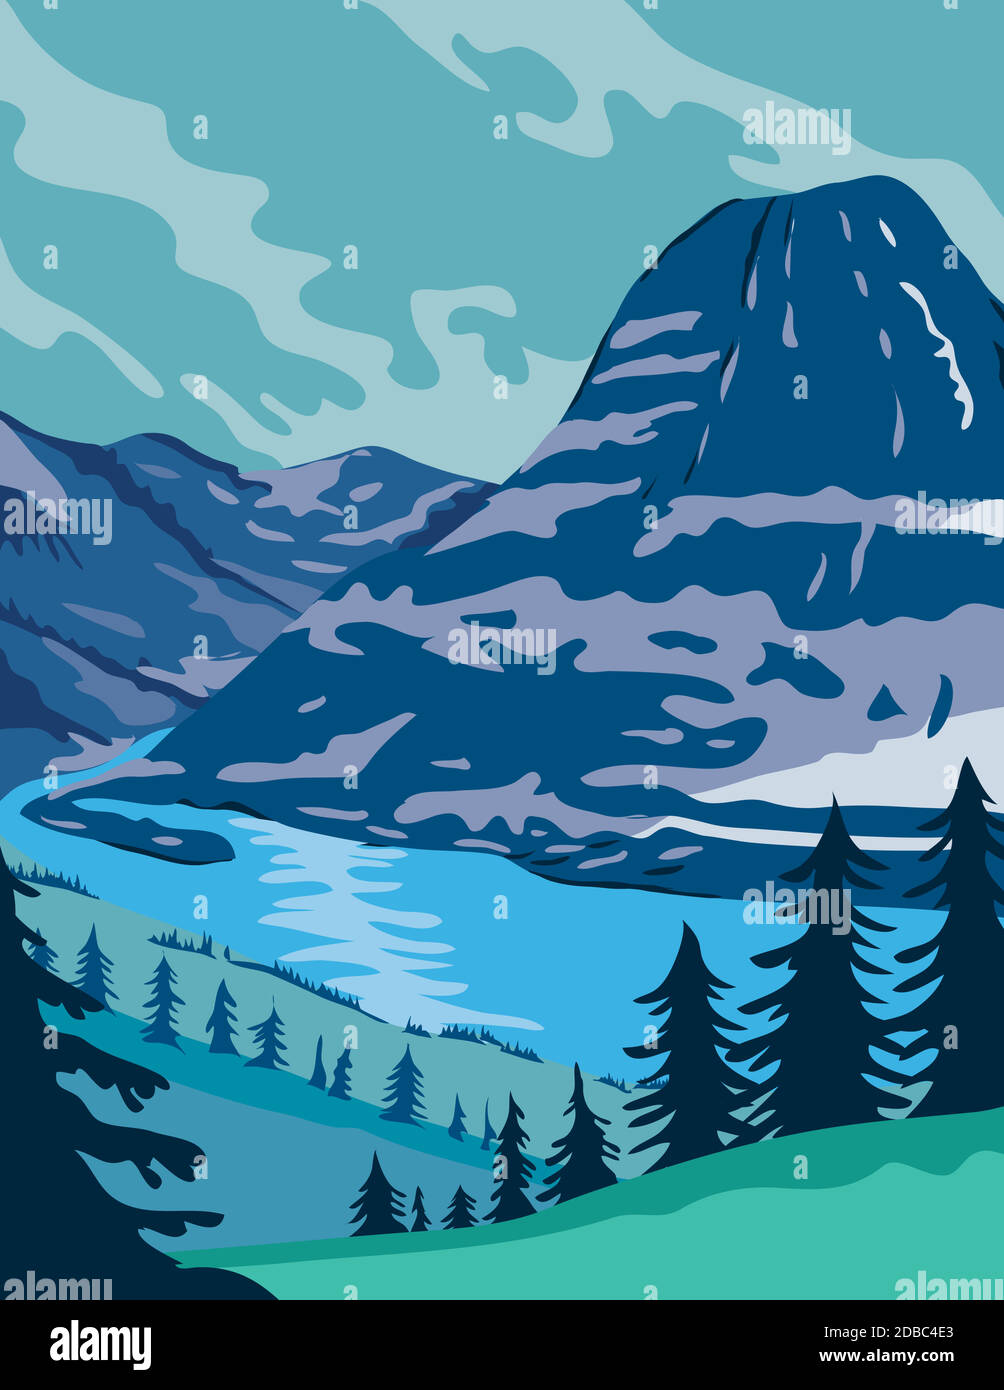 Affiche WPA art du parc national des Glaciers avec des forêts vierges, des prairies alpines, des montagnes et des lacs situés dans le Montana, États-Unis fait en travaux pro Illustration de Vecteur